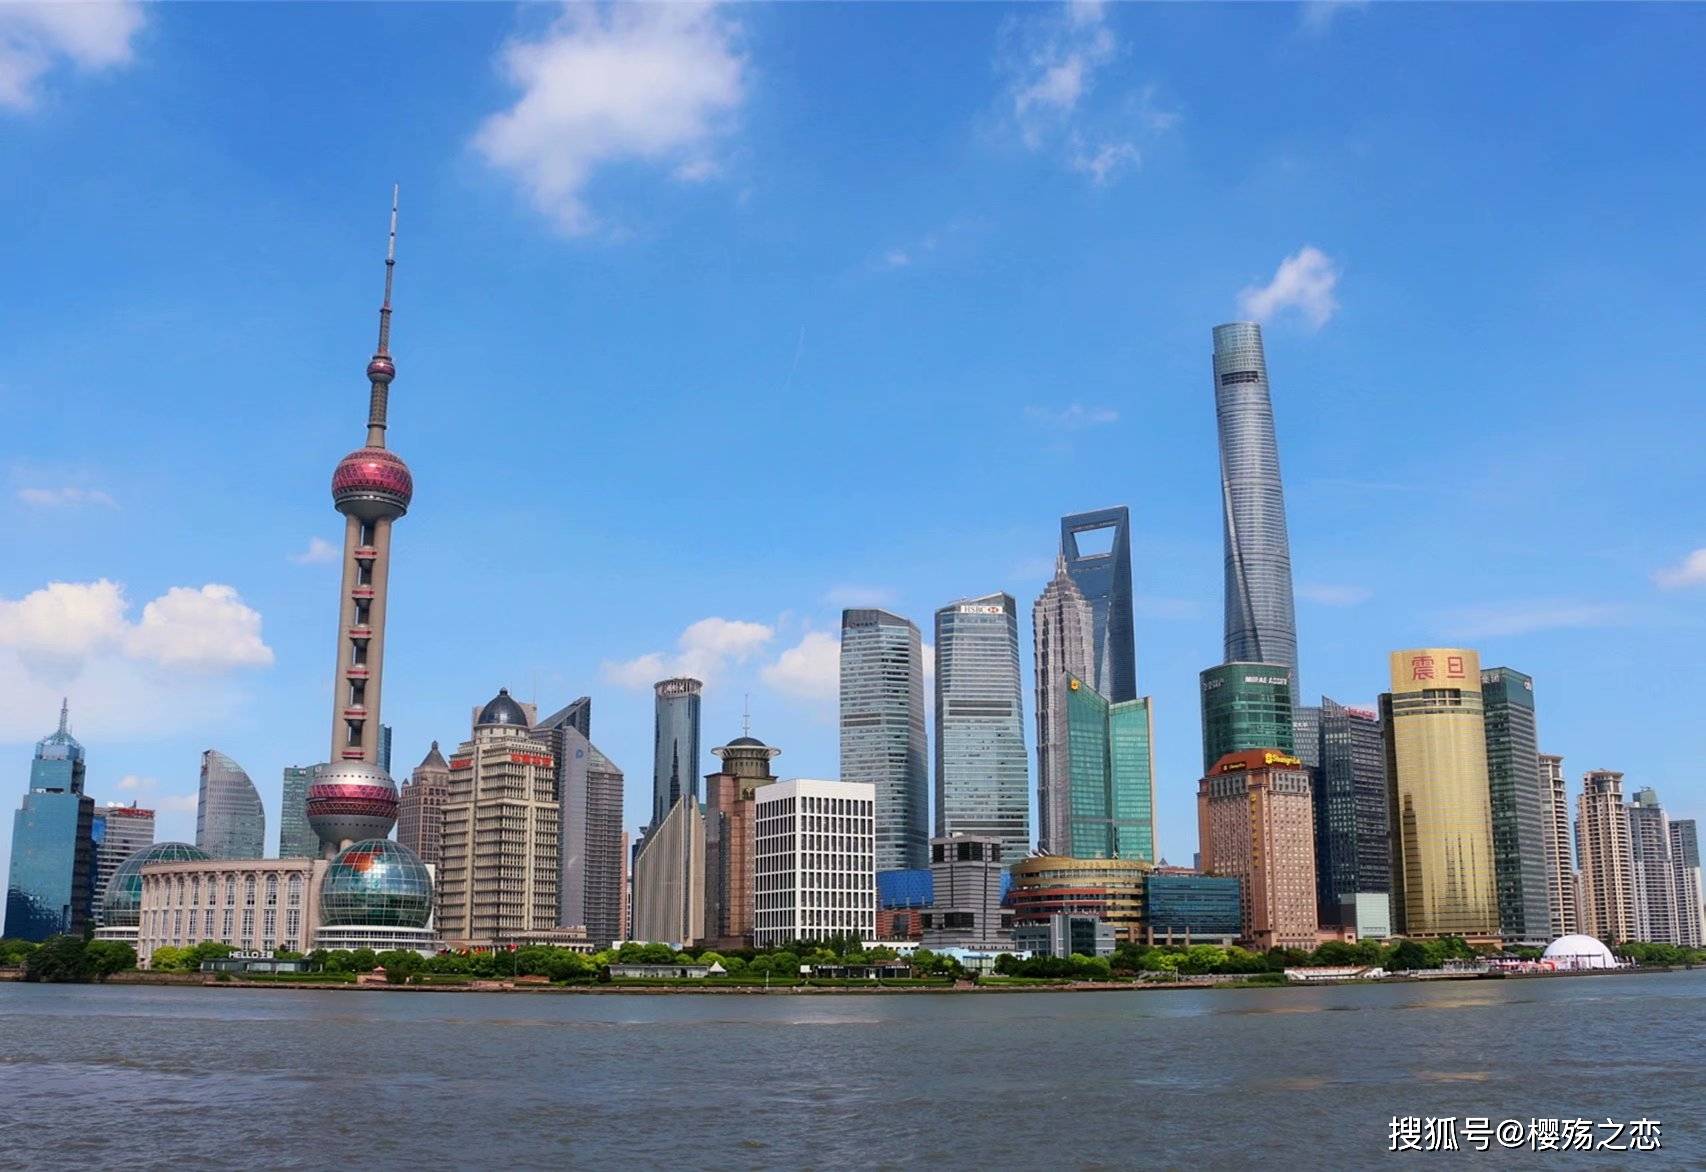 世界五百强排名2020_全球500强城市:苏州59名、南京89名、成都98名